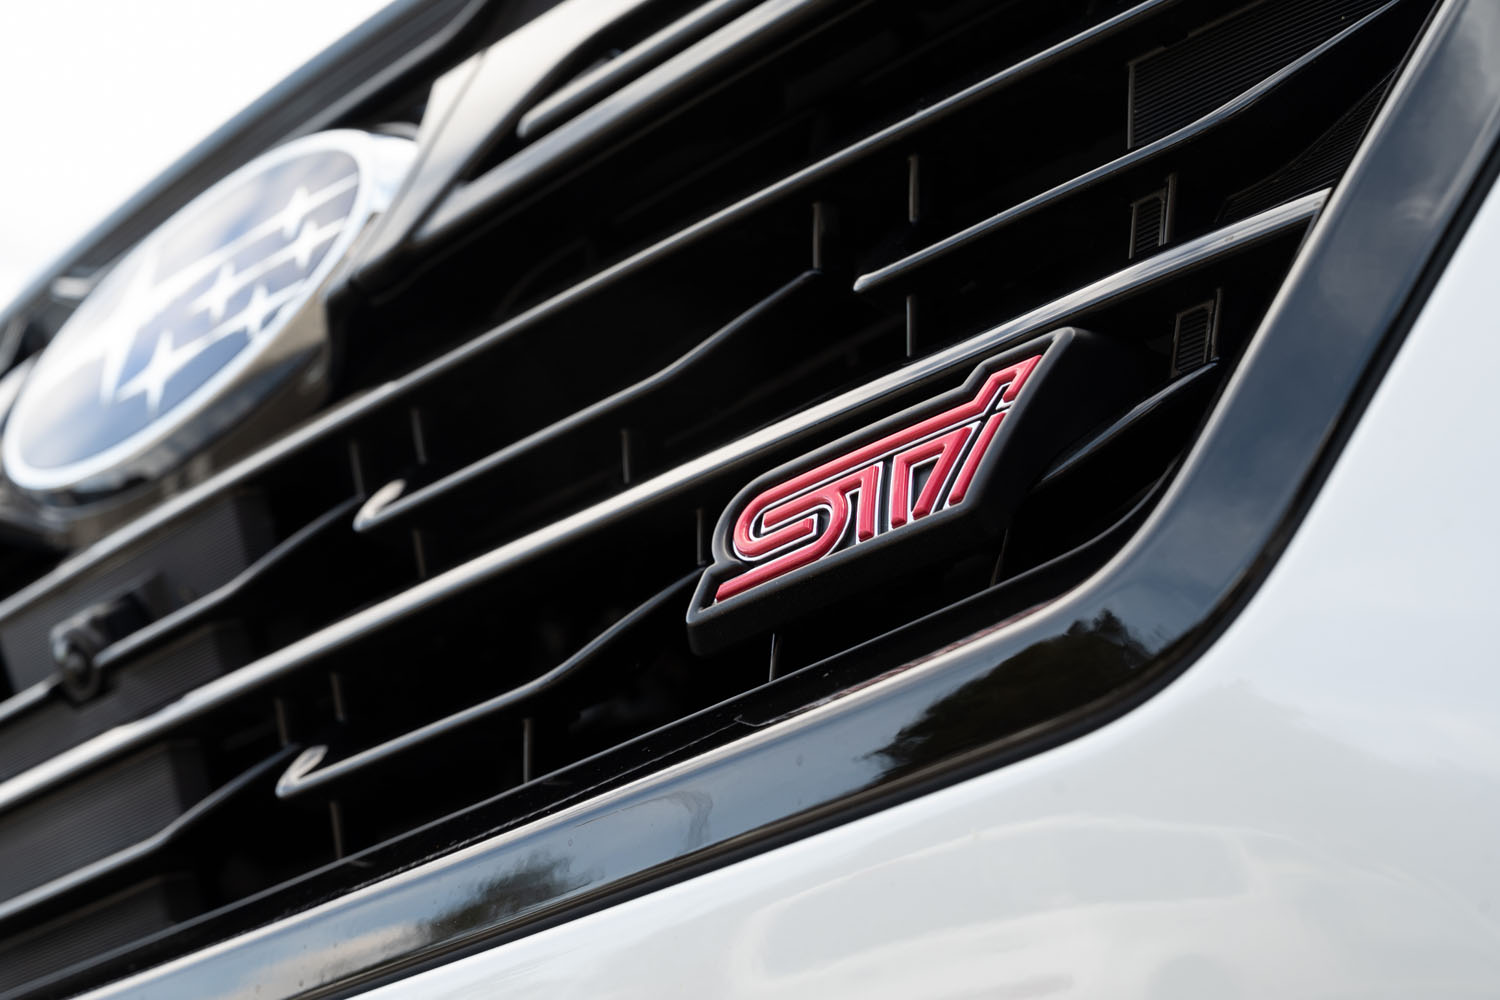 「STI Sport」シリーズの開発には、スバルのモータースポーツ活動を担うSTI（スバルテクニカインターナショナル）が関わっている。